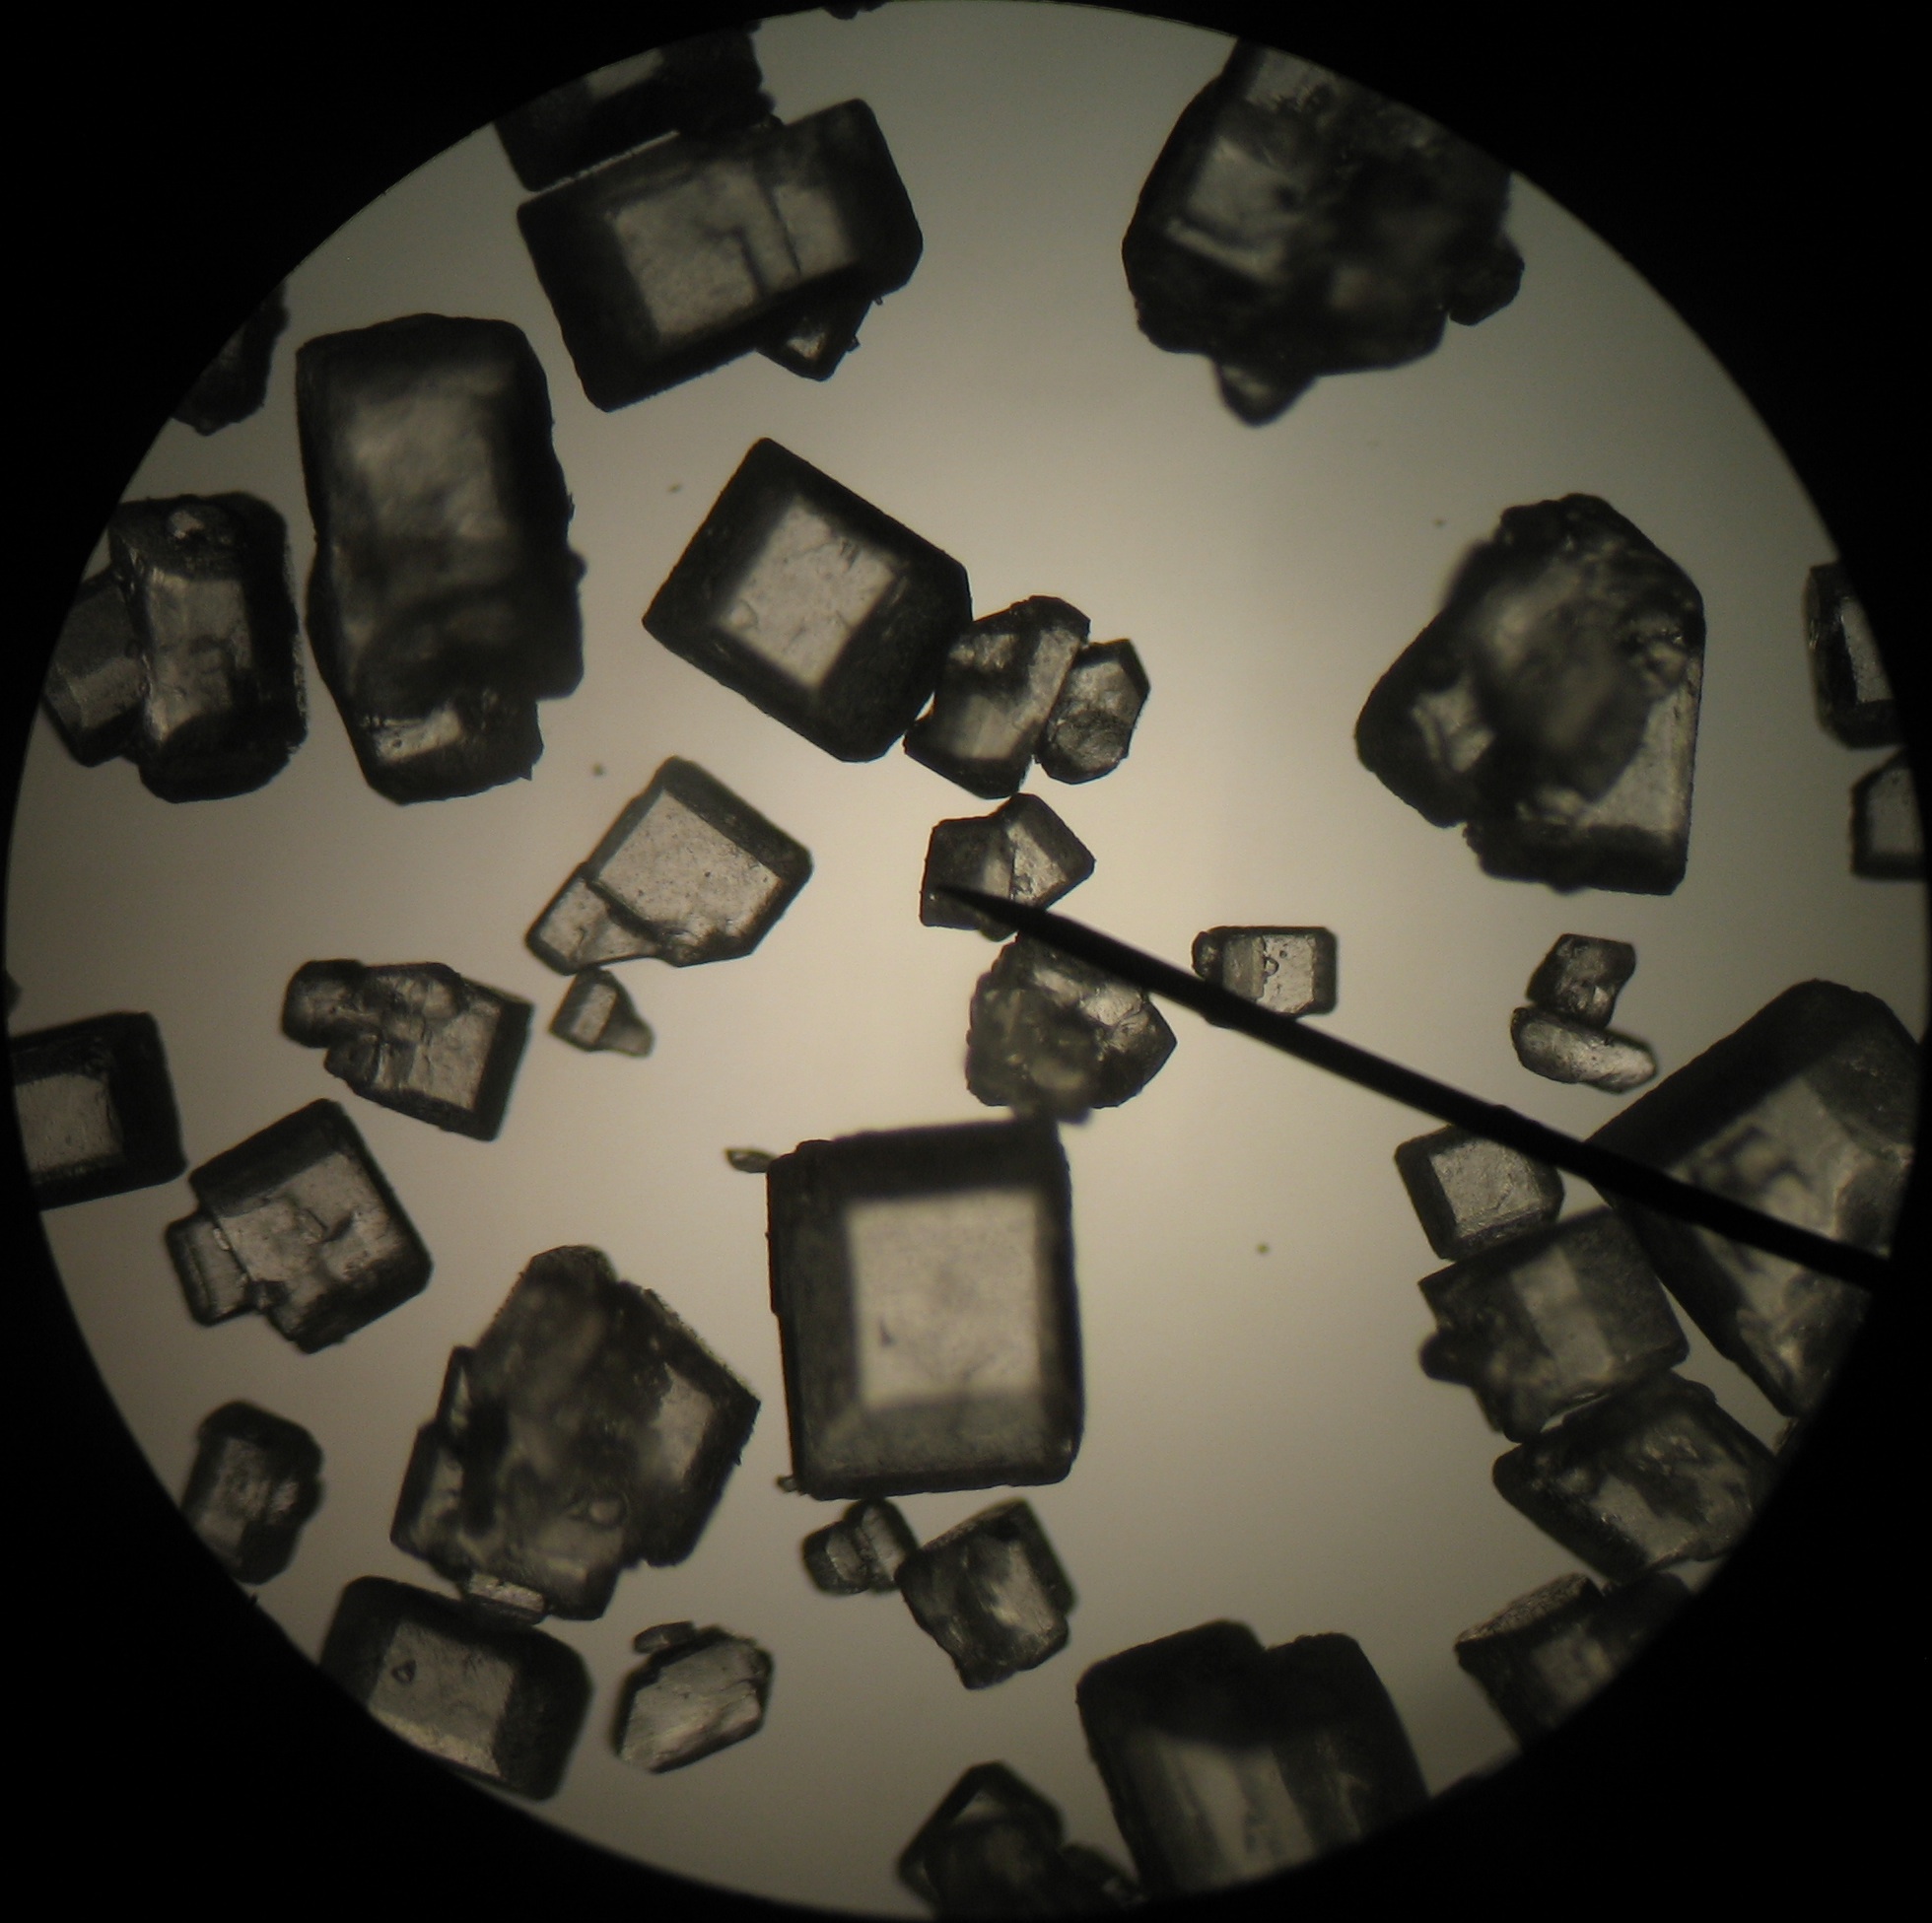 Sugar crystals under microscope